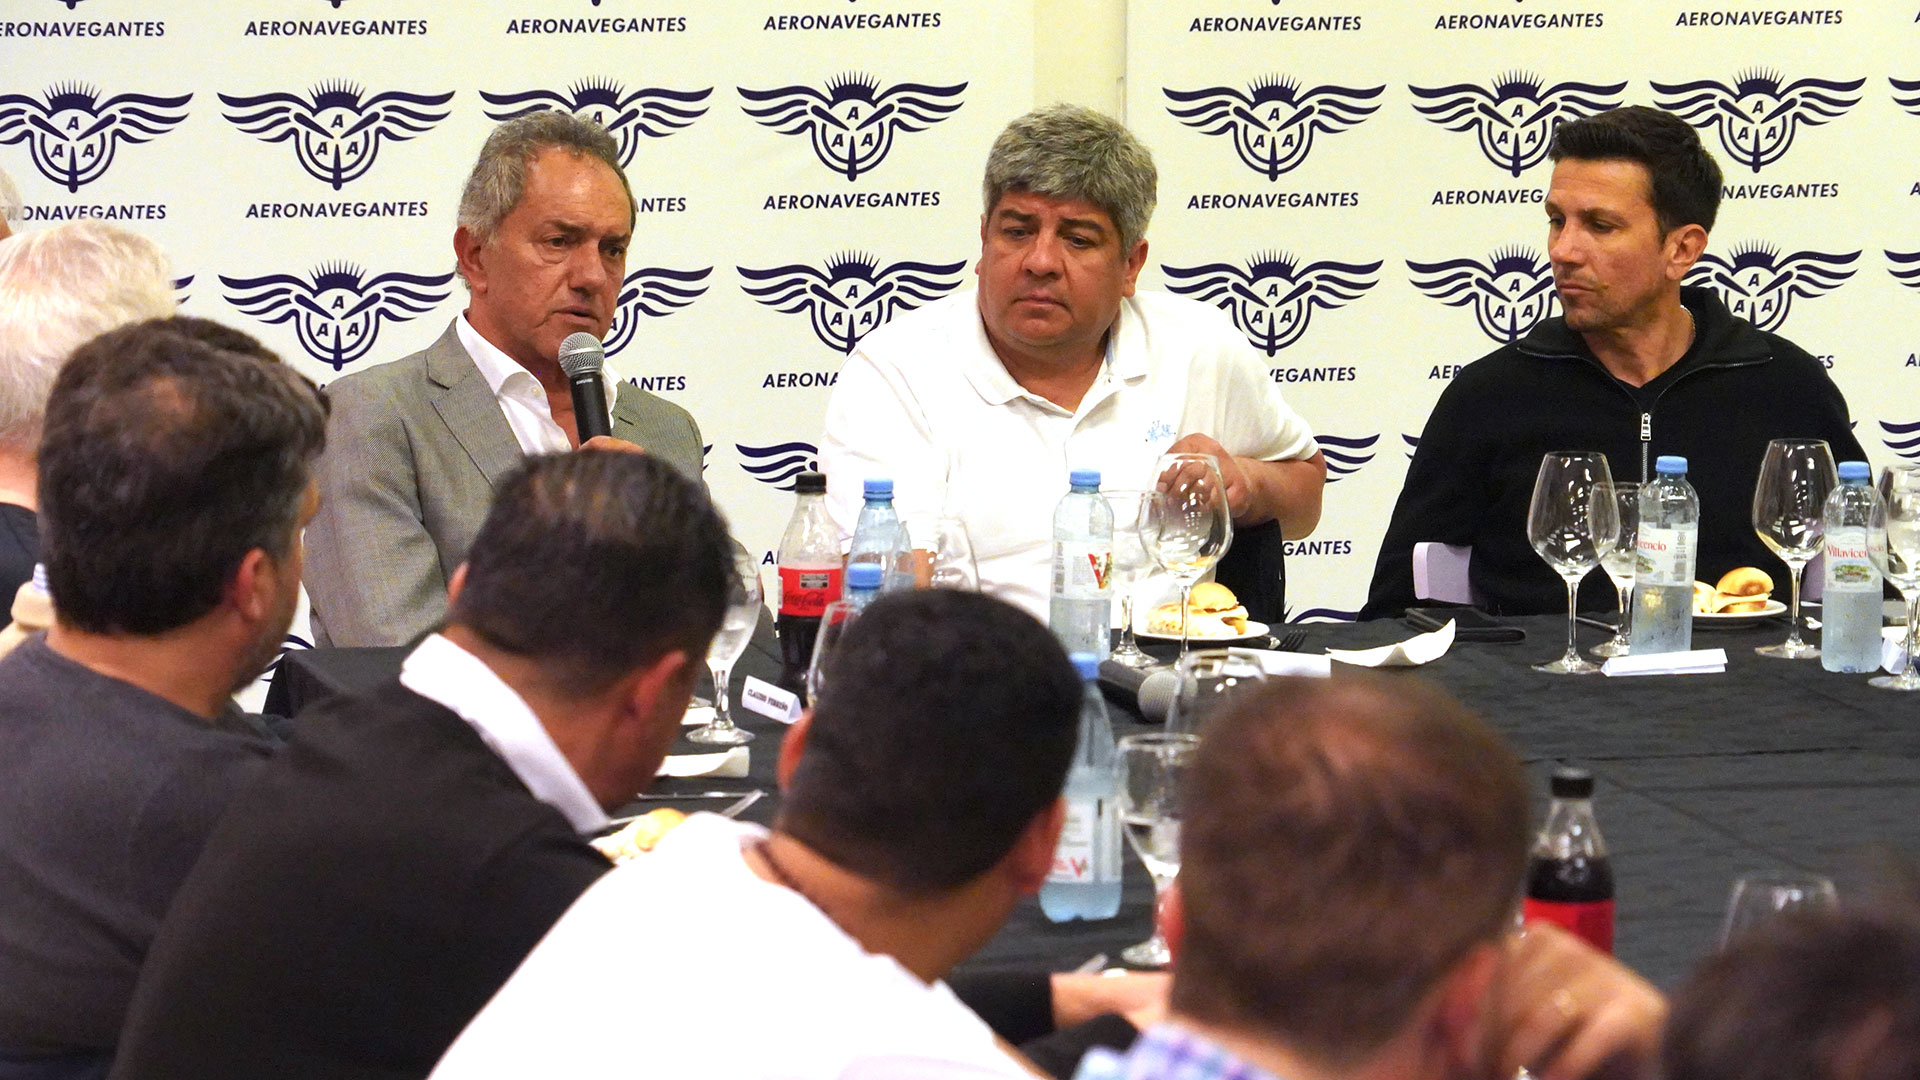 Daniel Scioli se sentó a la mesa con sindicalistas el martes por la noche con Pablo Moyano (Camioneros) y Juan Pablo Brey (Aeronavegantes) en la cabecera.